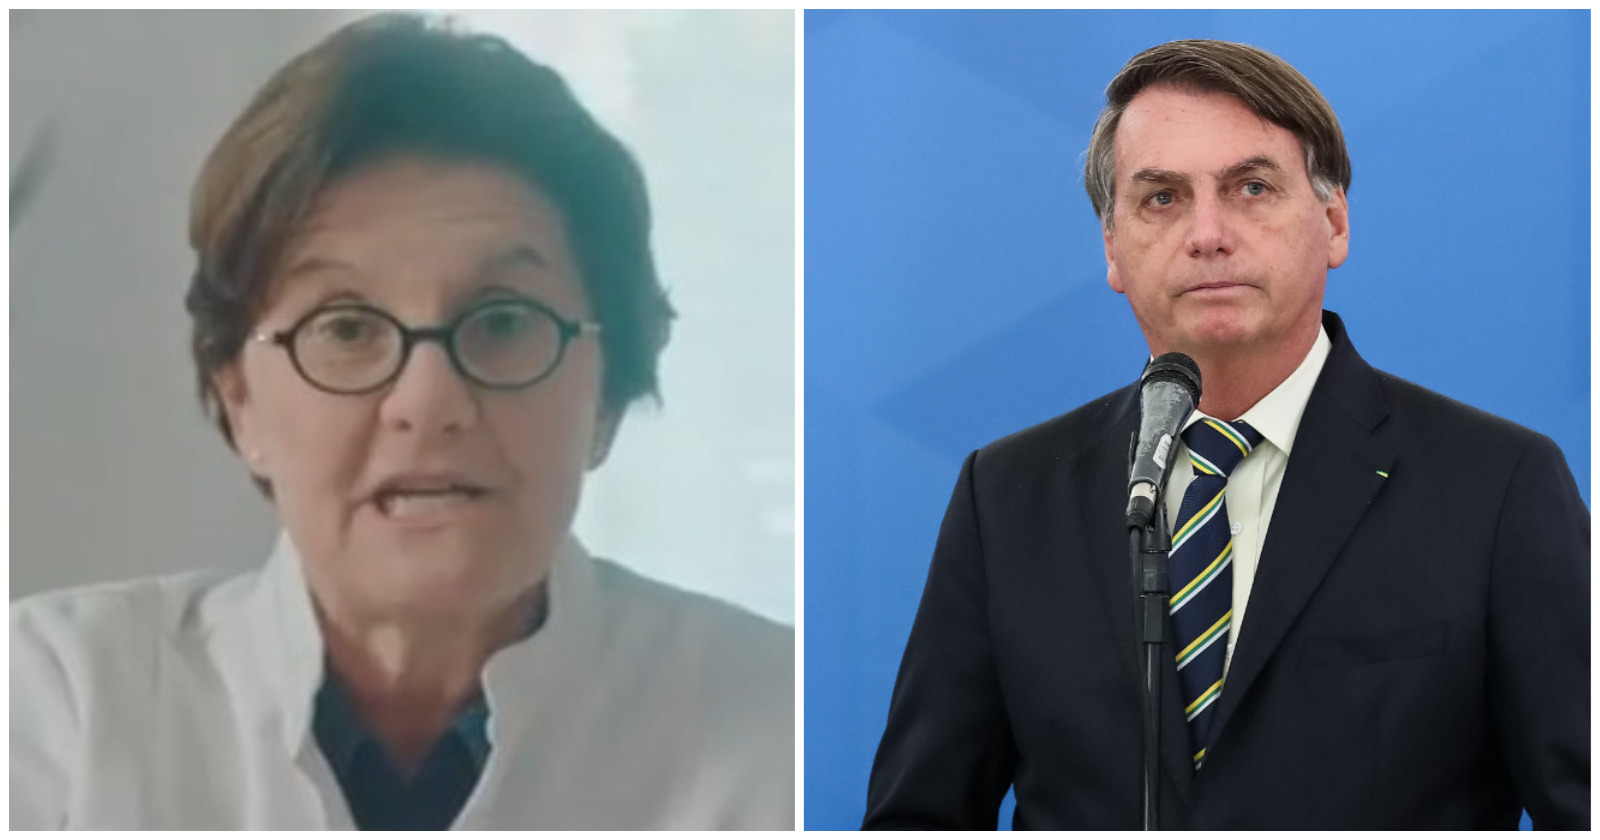 Médica criticou falas recentes do presidente Bolsonaro